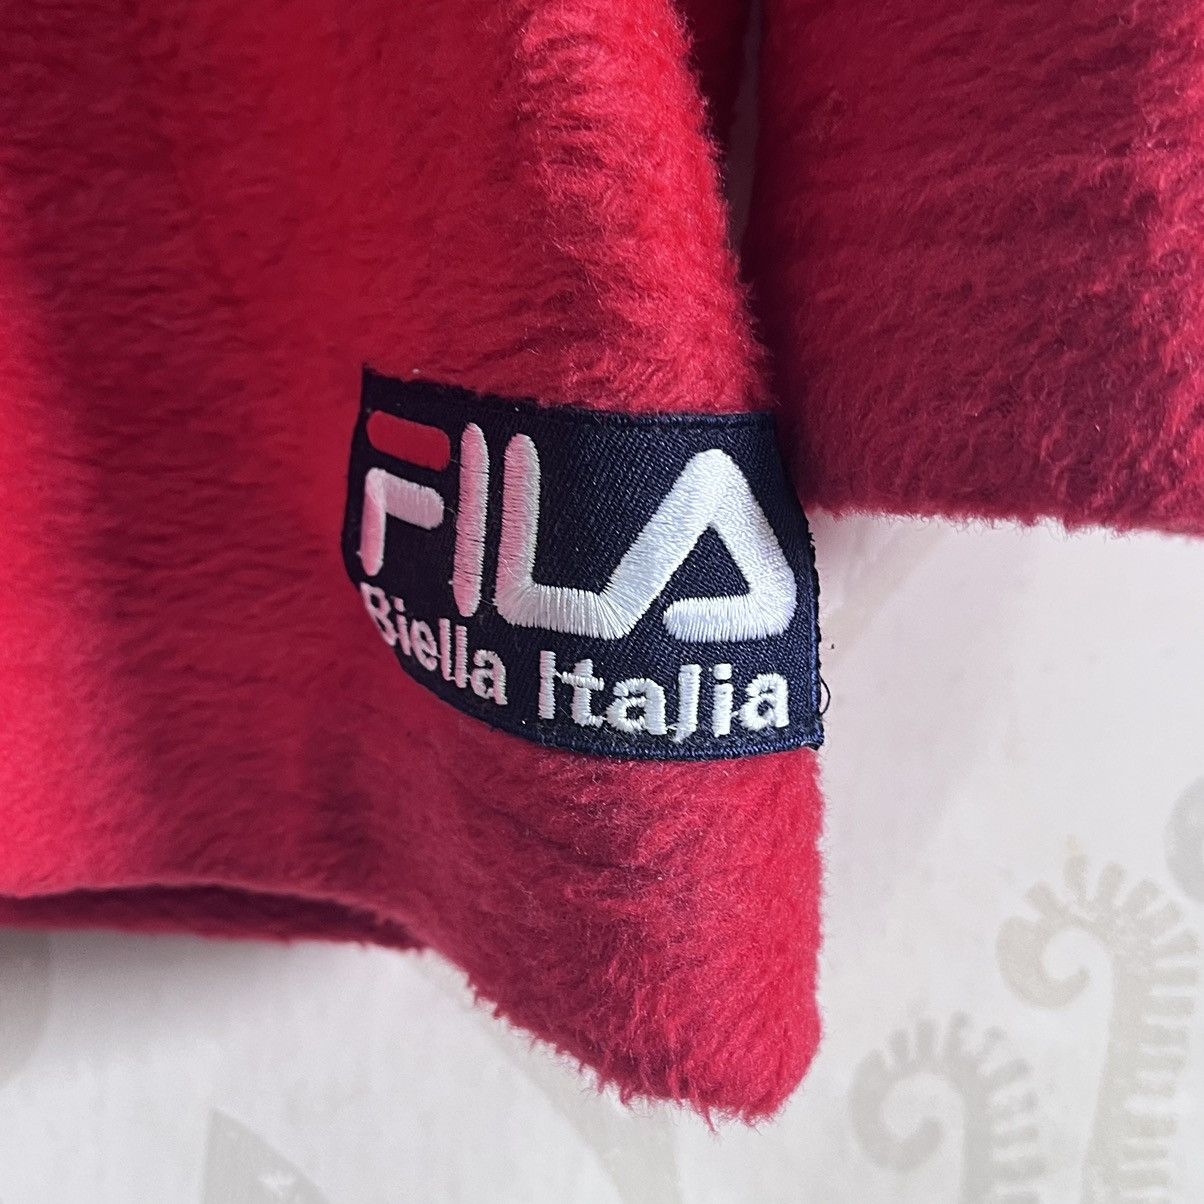 Vintage 1990s Fila Sweatshirt Biella Italia Big Logo - 14